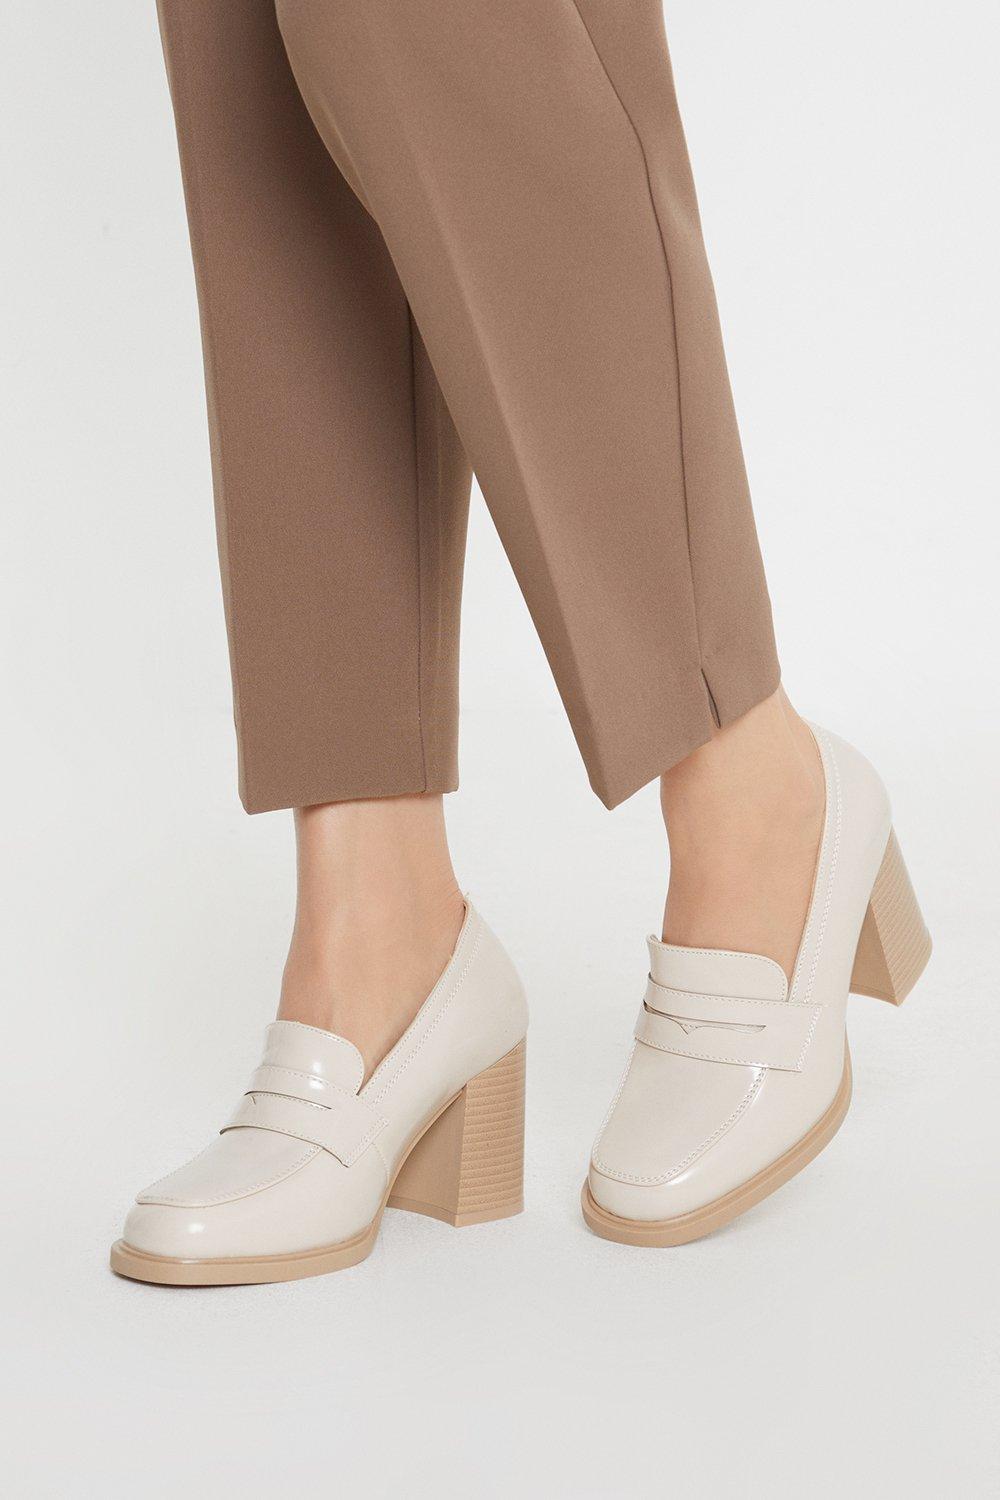 Women’s Principles: Lark Platform High Heel Penny Loafers - beige - 7